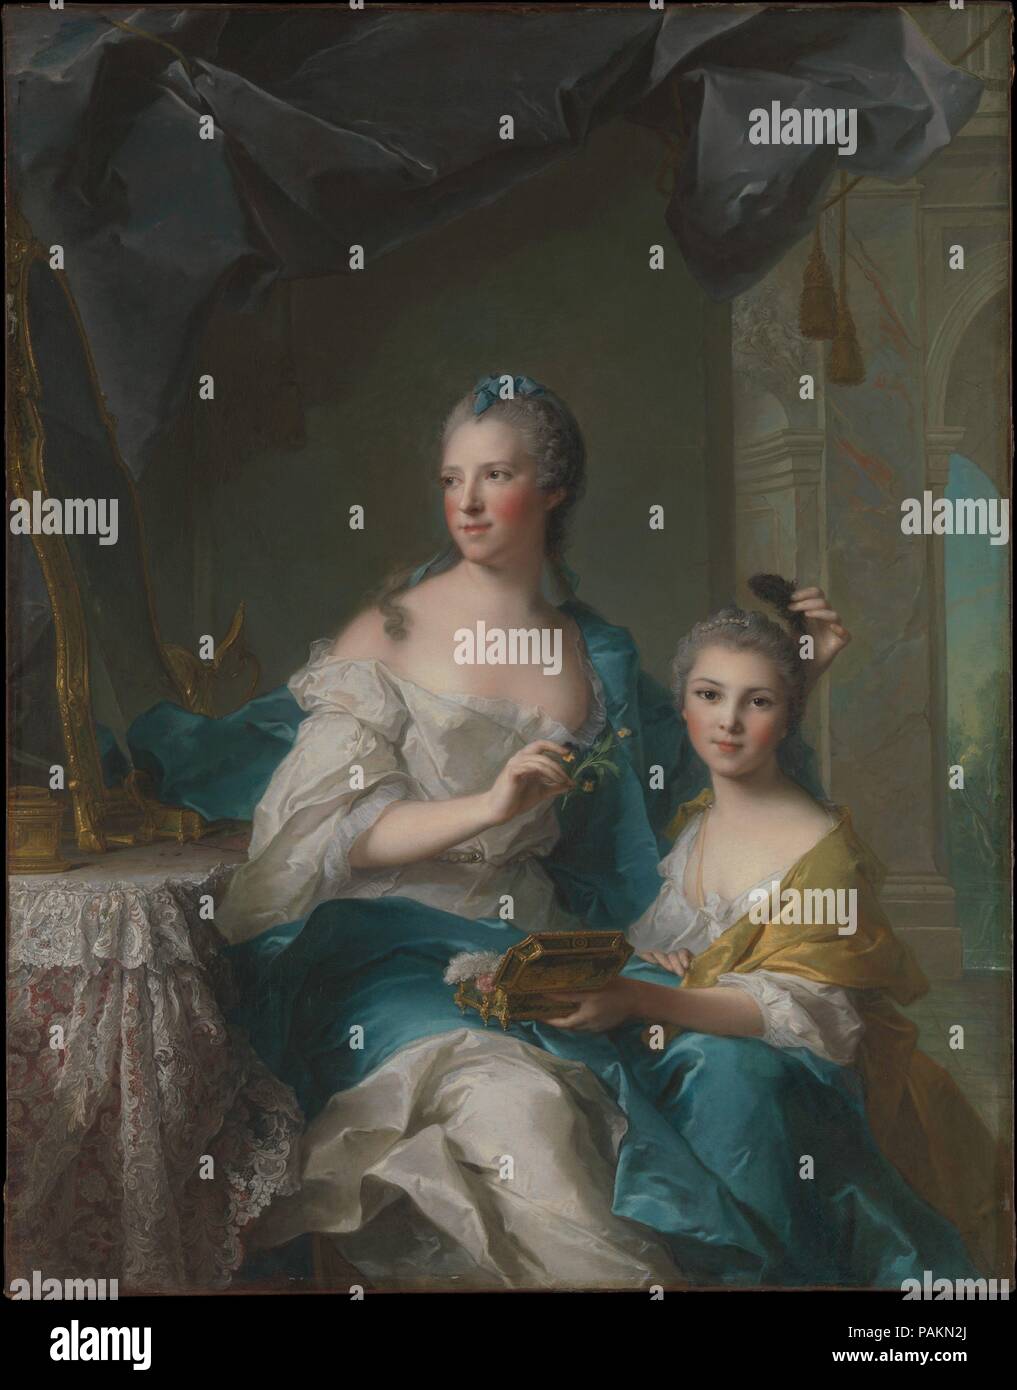 Madame Marsollier e sua figlia. Artista: Jean Marc Nattier (francese,  Parigi Parigi 1685-1766). Dimensioni: 57 1/2 x 45 in. (146.1 x 114,3 cm).  Data: 1749. Madame Marsollier era sposato, sotto la sua